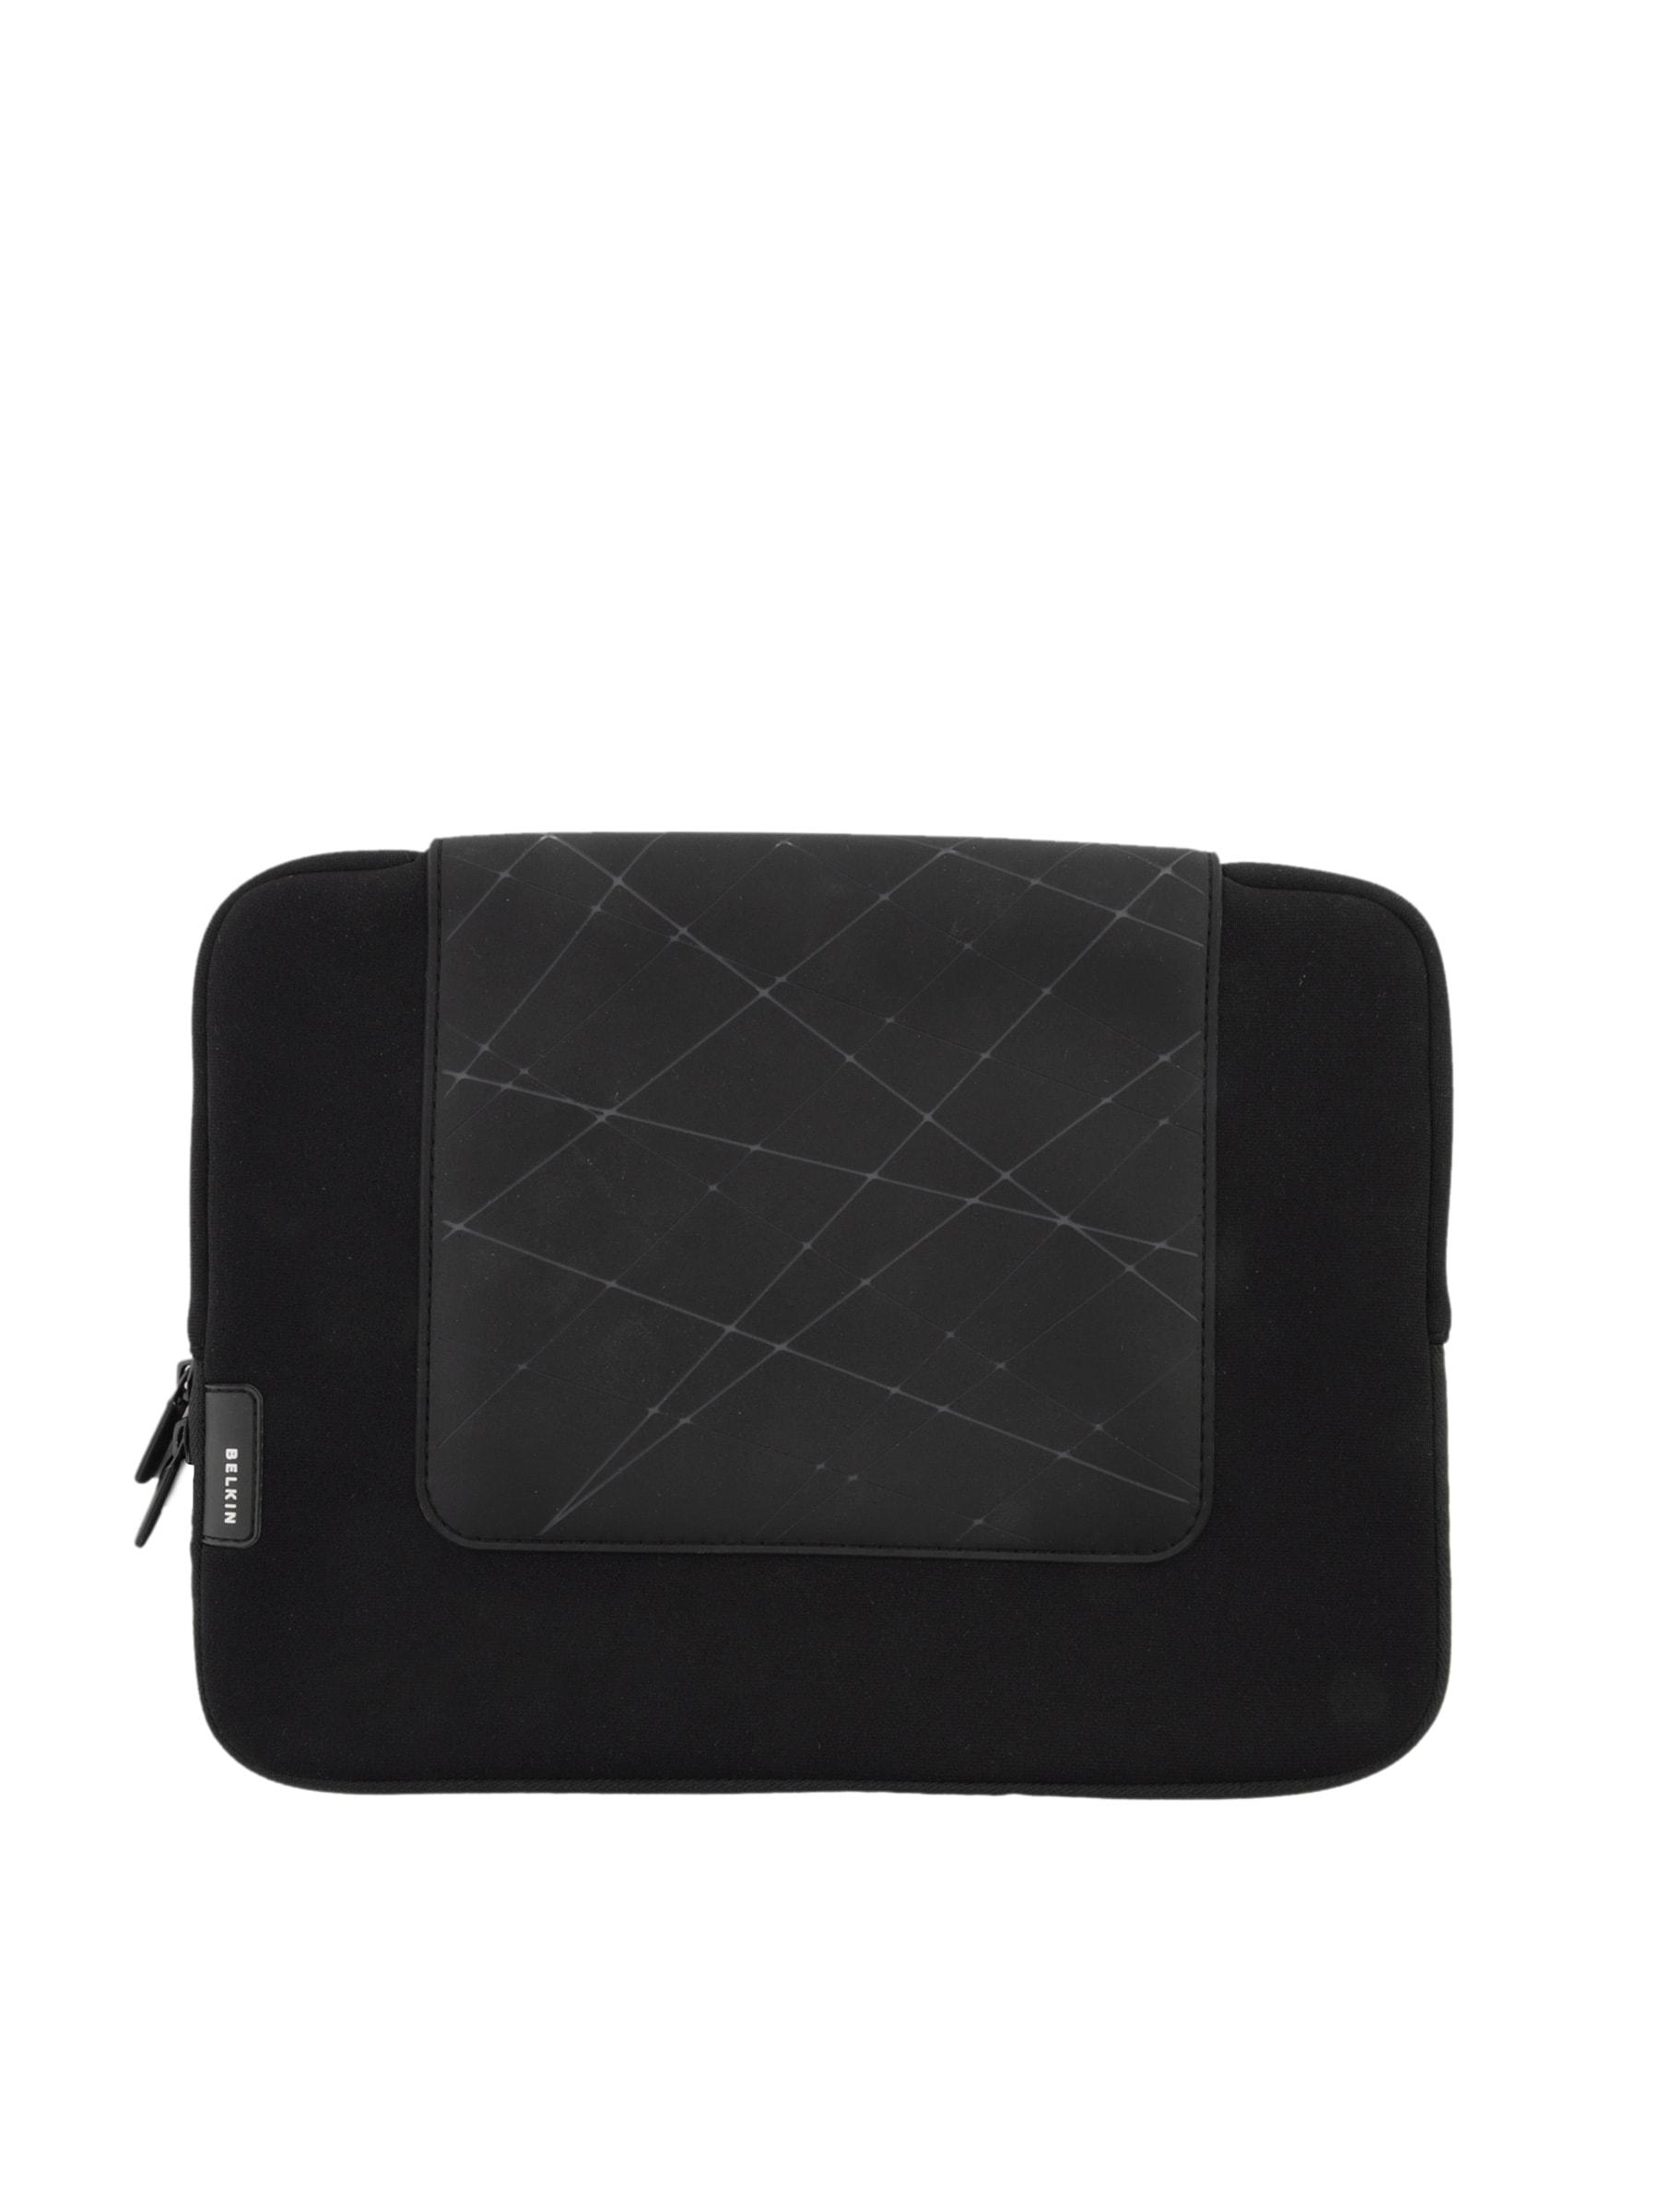 Belkin Unisex Grip Sleeve Black Bags